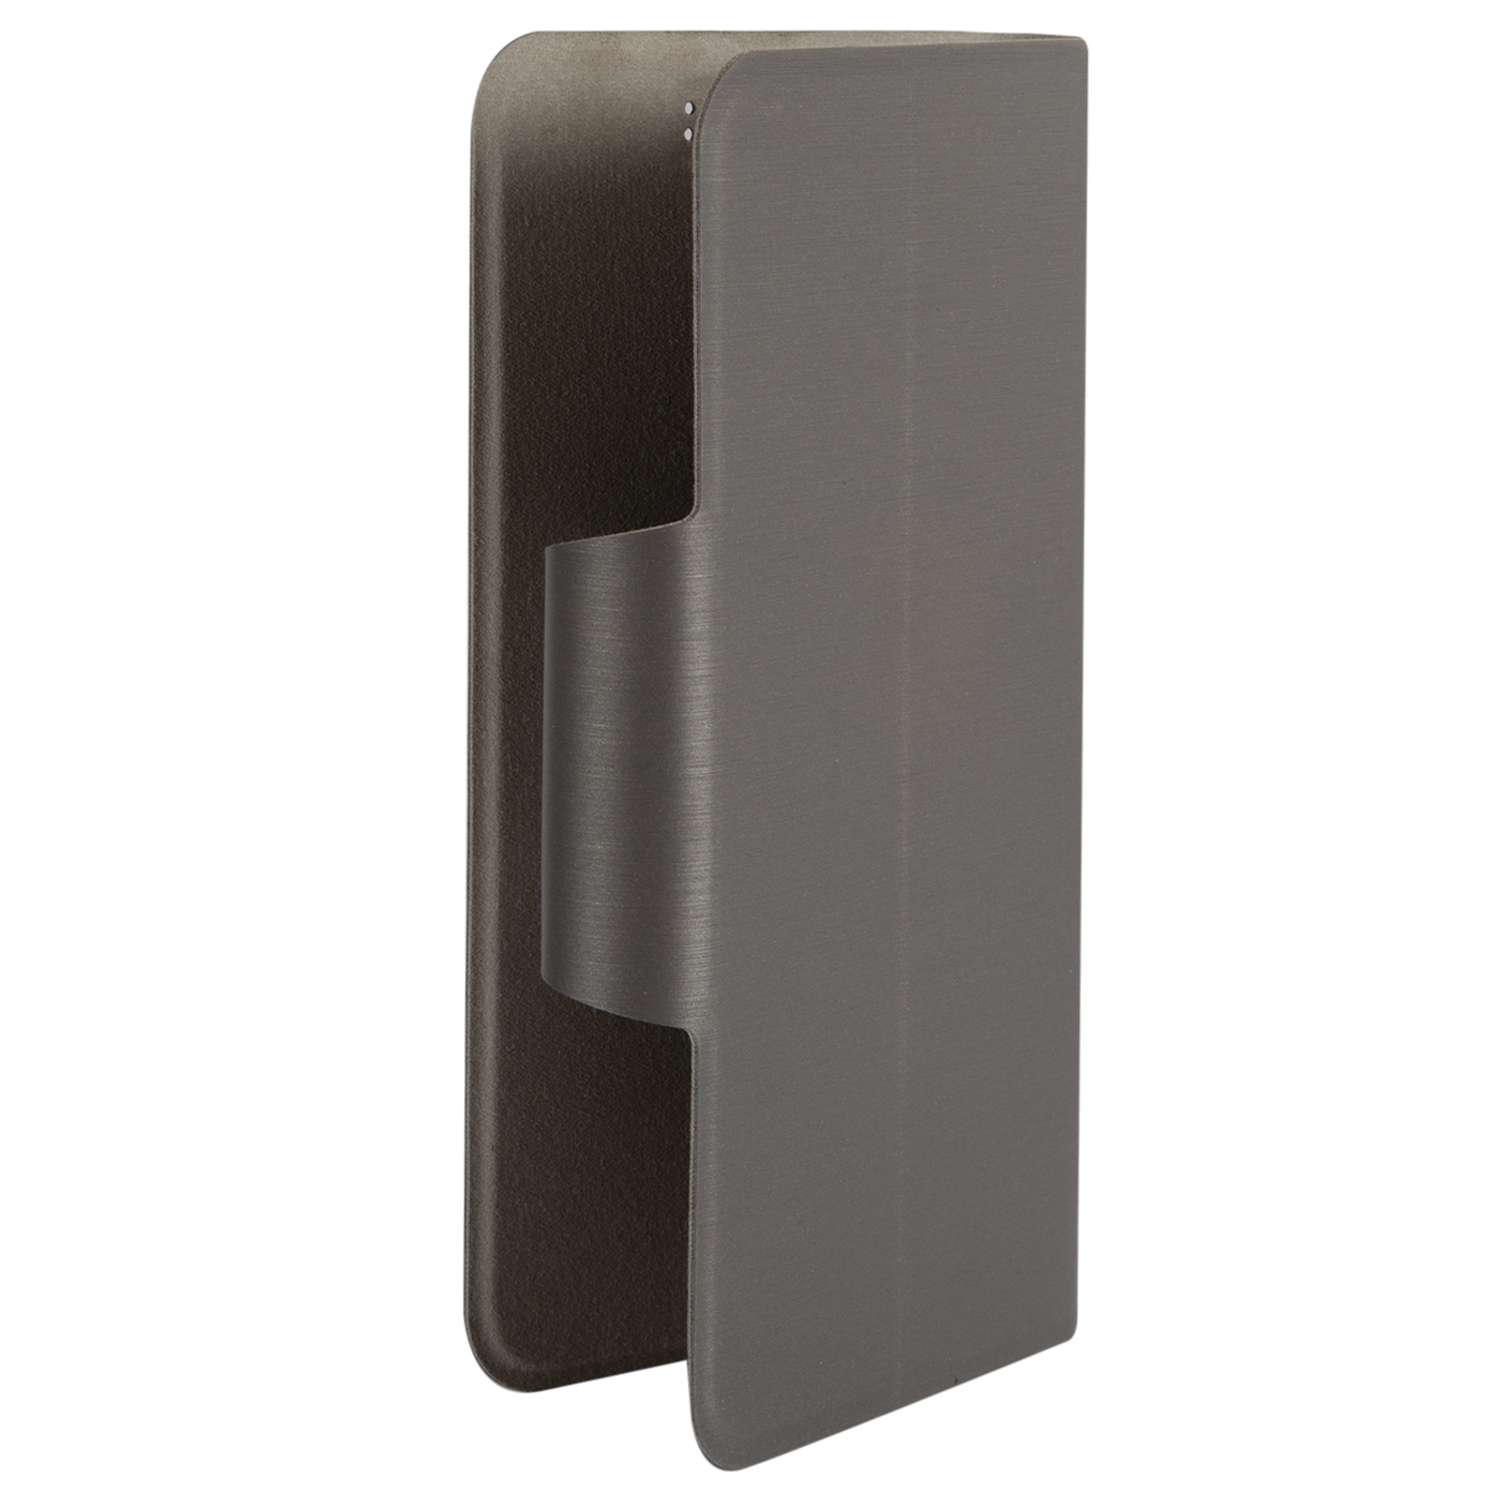 Чехол универсальный iBox UniMotion для телефонов 3.5-4.5 дюйма серый - фото 2